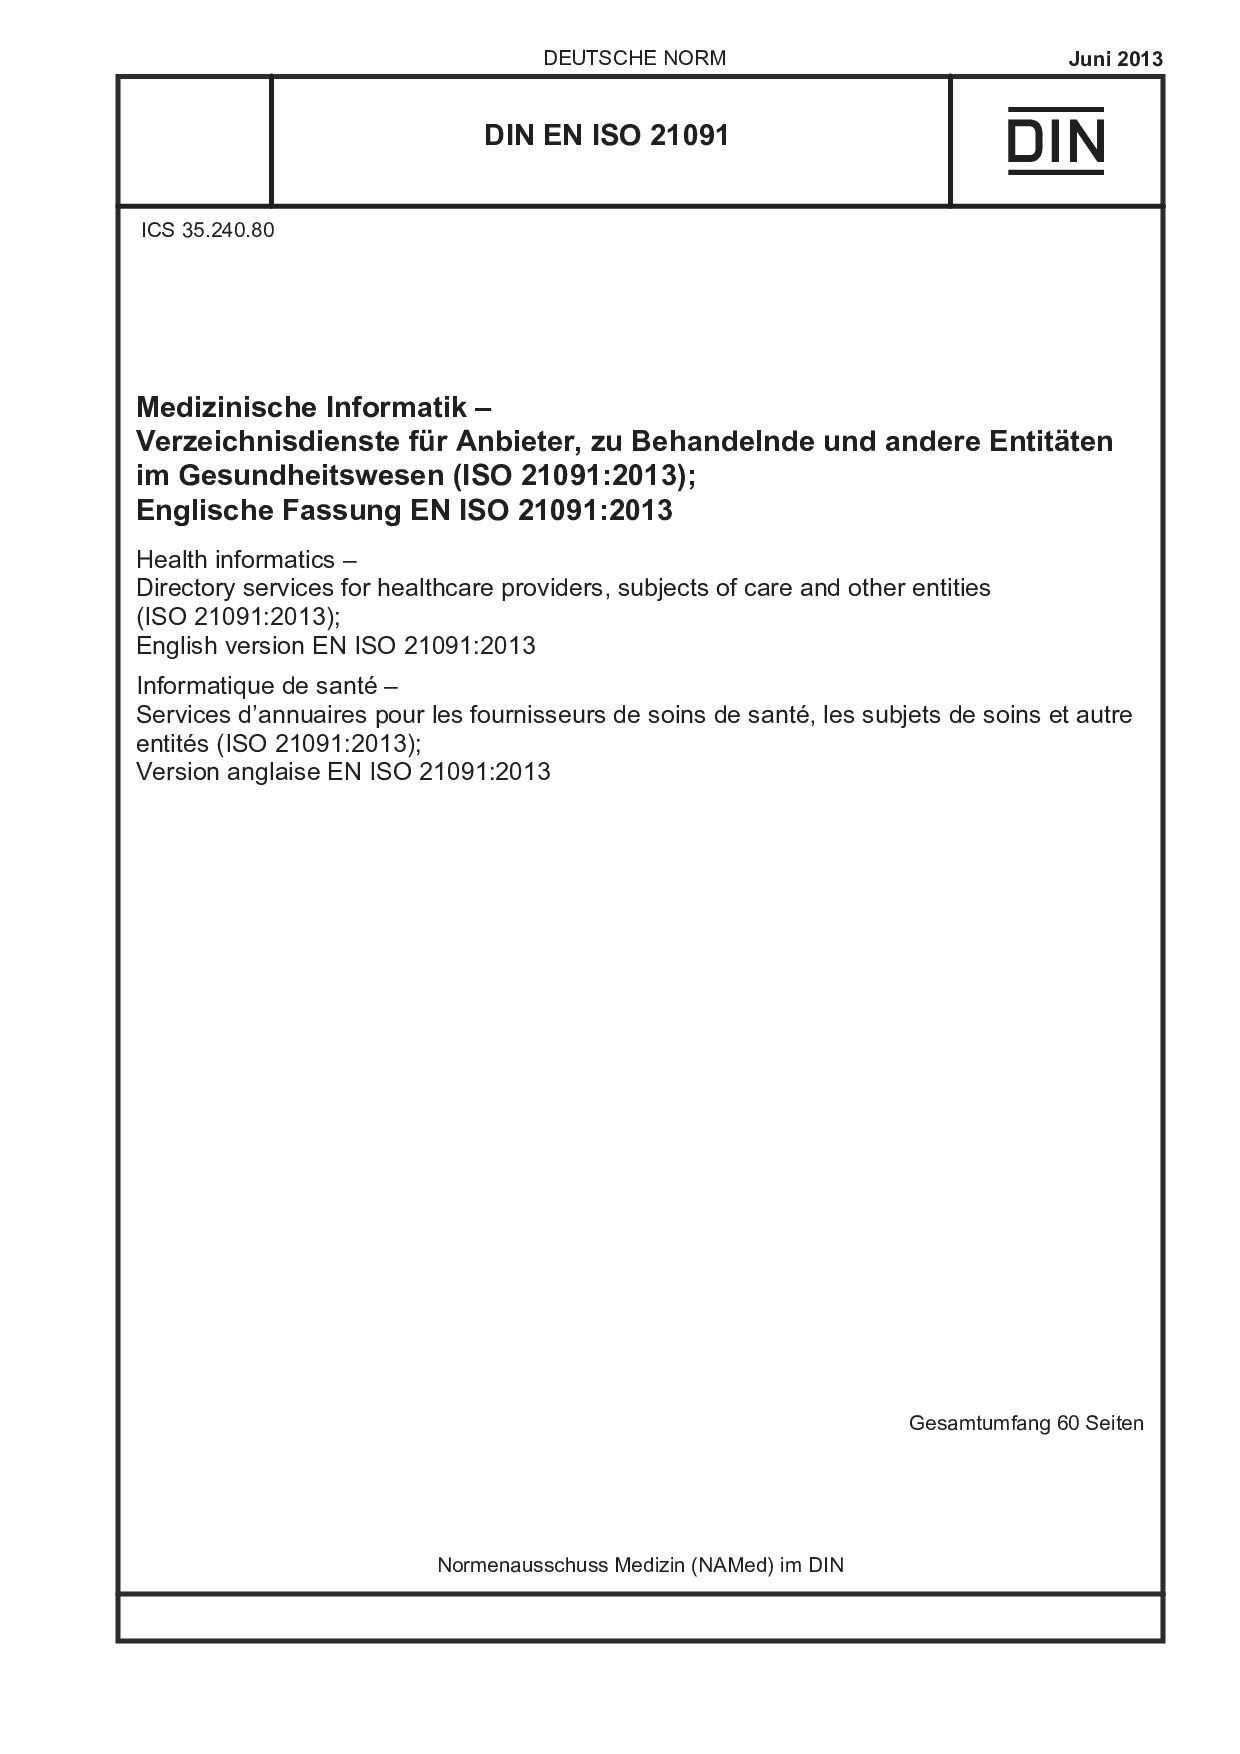 DIN EN ISO 21091:2013-06